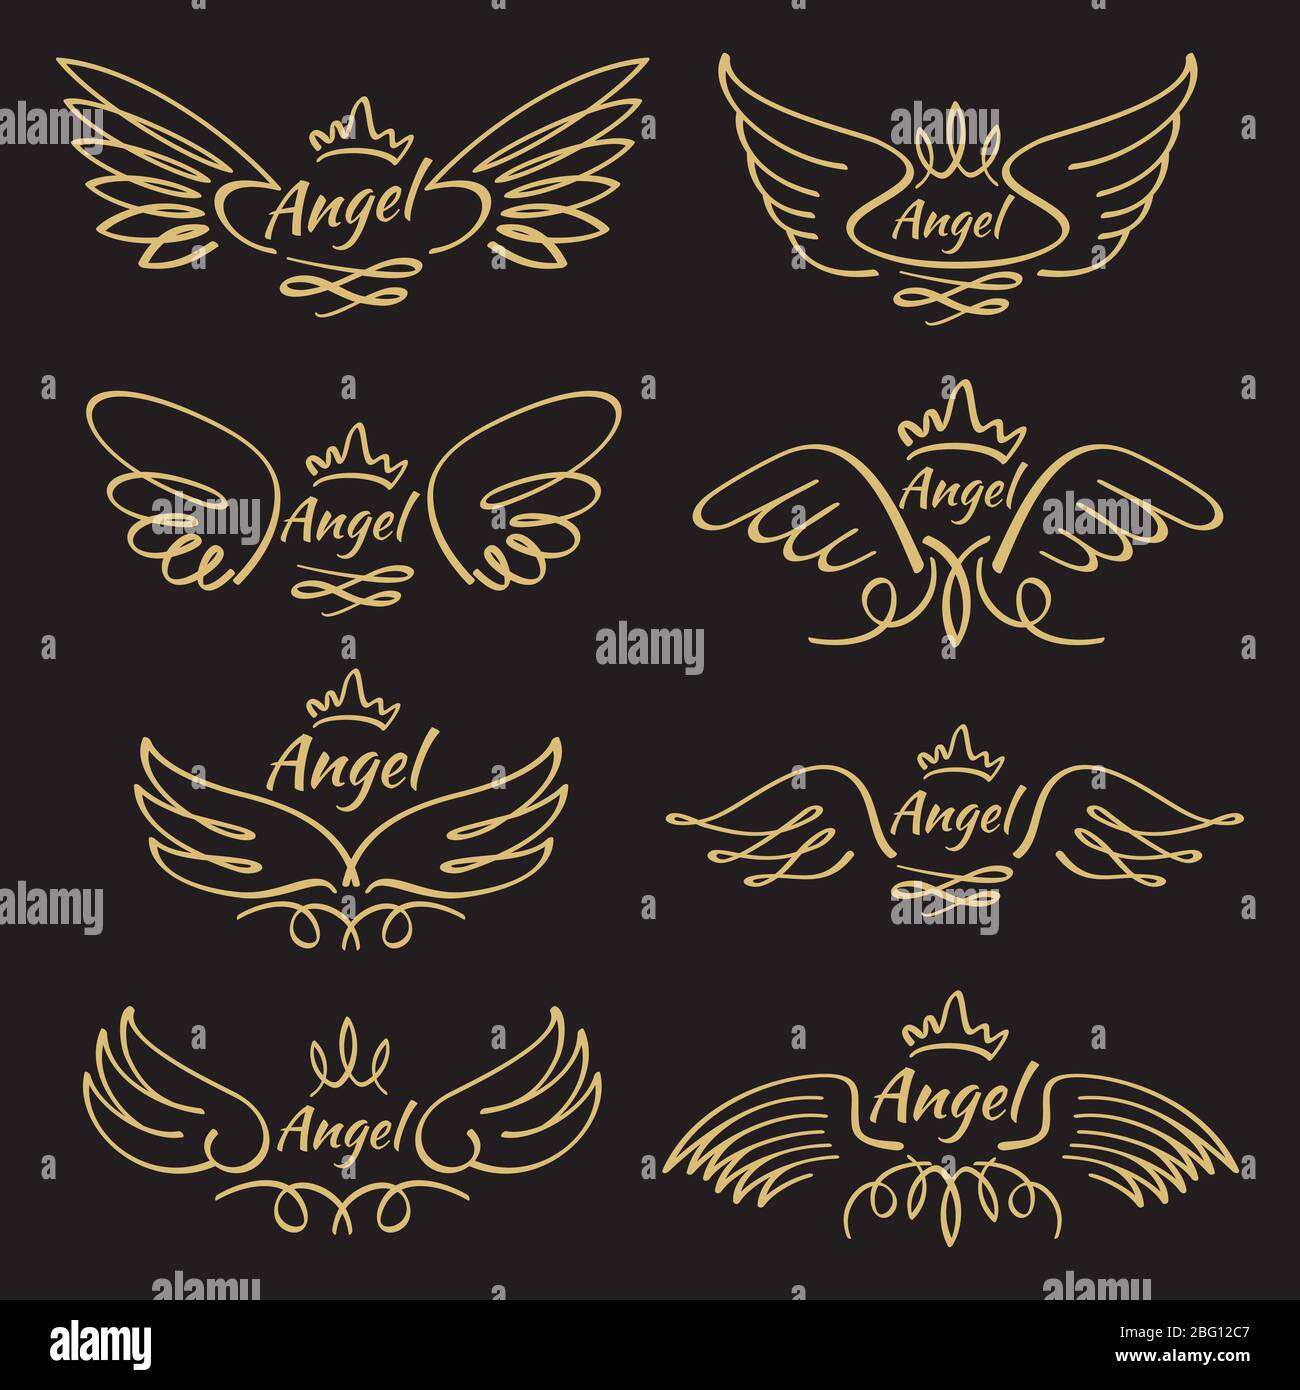 Elegante Engel goldenen fliegenden Flügel auf schwarzem Hintergrund. Fliegender Engel mit Flügelfeder, goldener linearer Flügel, Vektorgrafik Stock Vektor